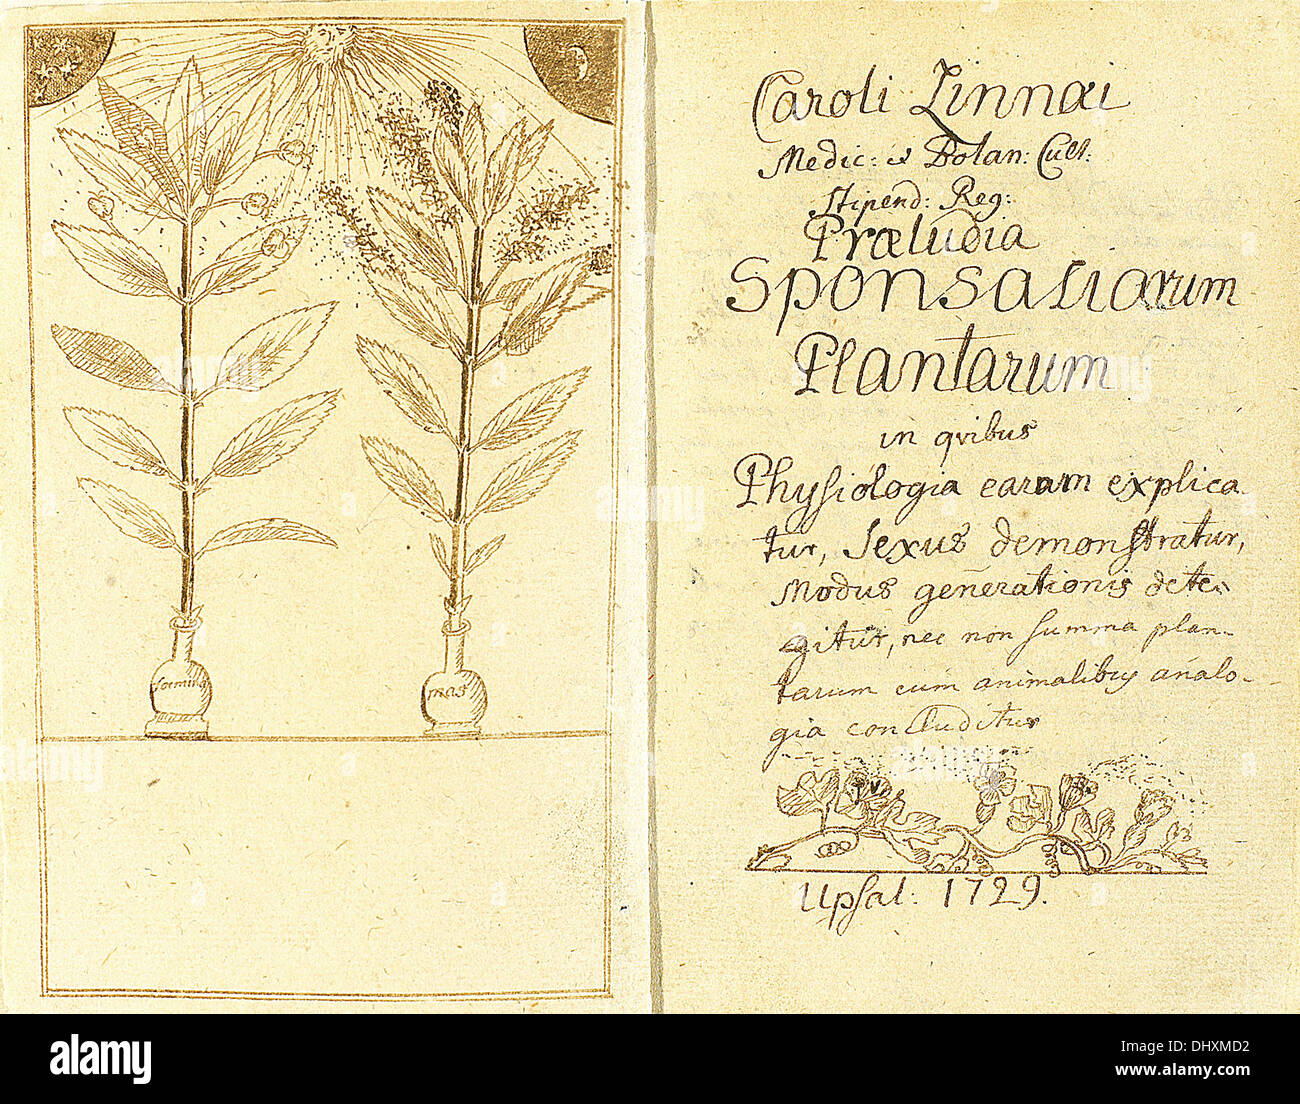 Bestäubung von Carl Linnaeus, 1729 in Präludien Sponsaliorum Plantarum - dargestellt Stockfoto